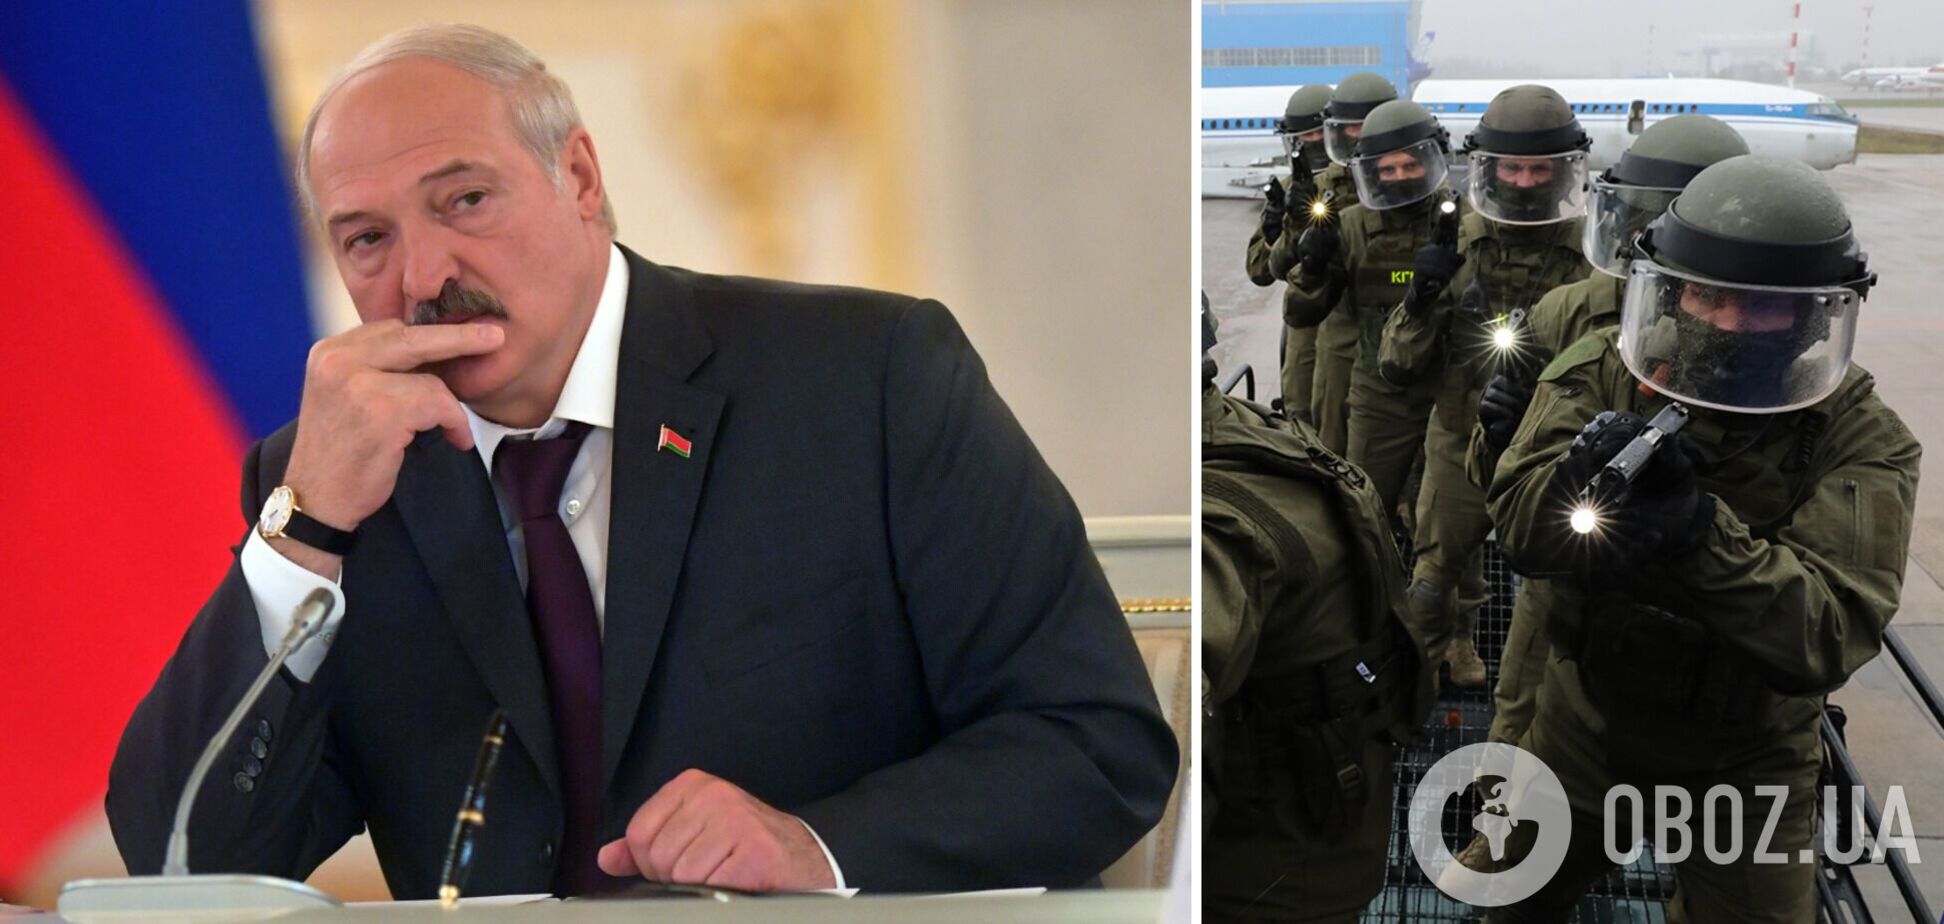 'Ситуація змушує нас реагувати': Лукашенко зібрав силовиків і заявив про загрозу диверсій